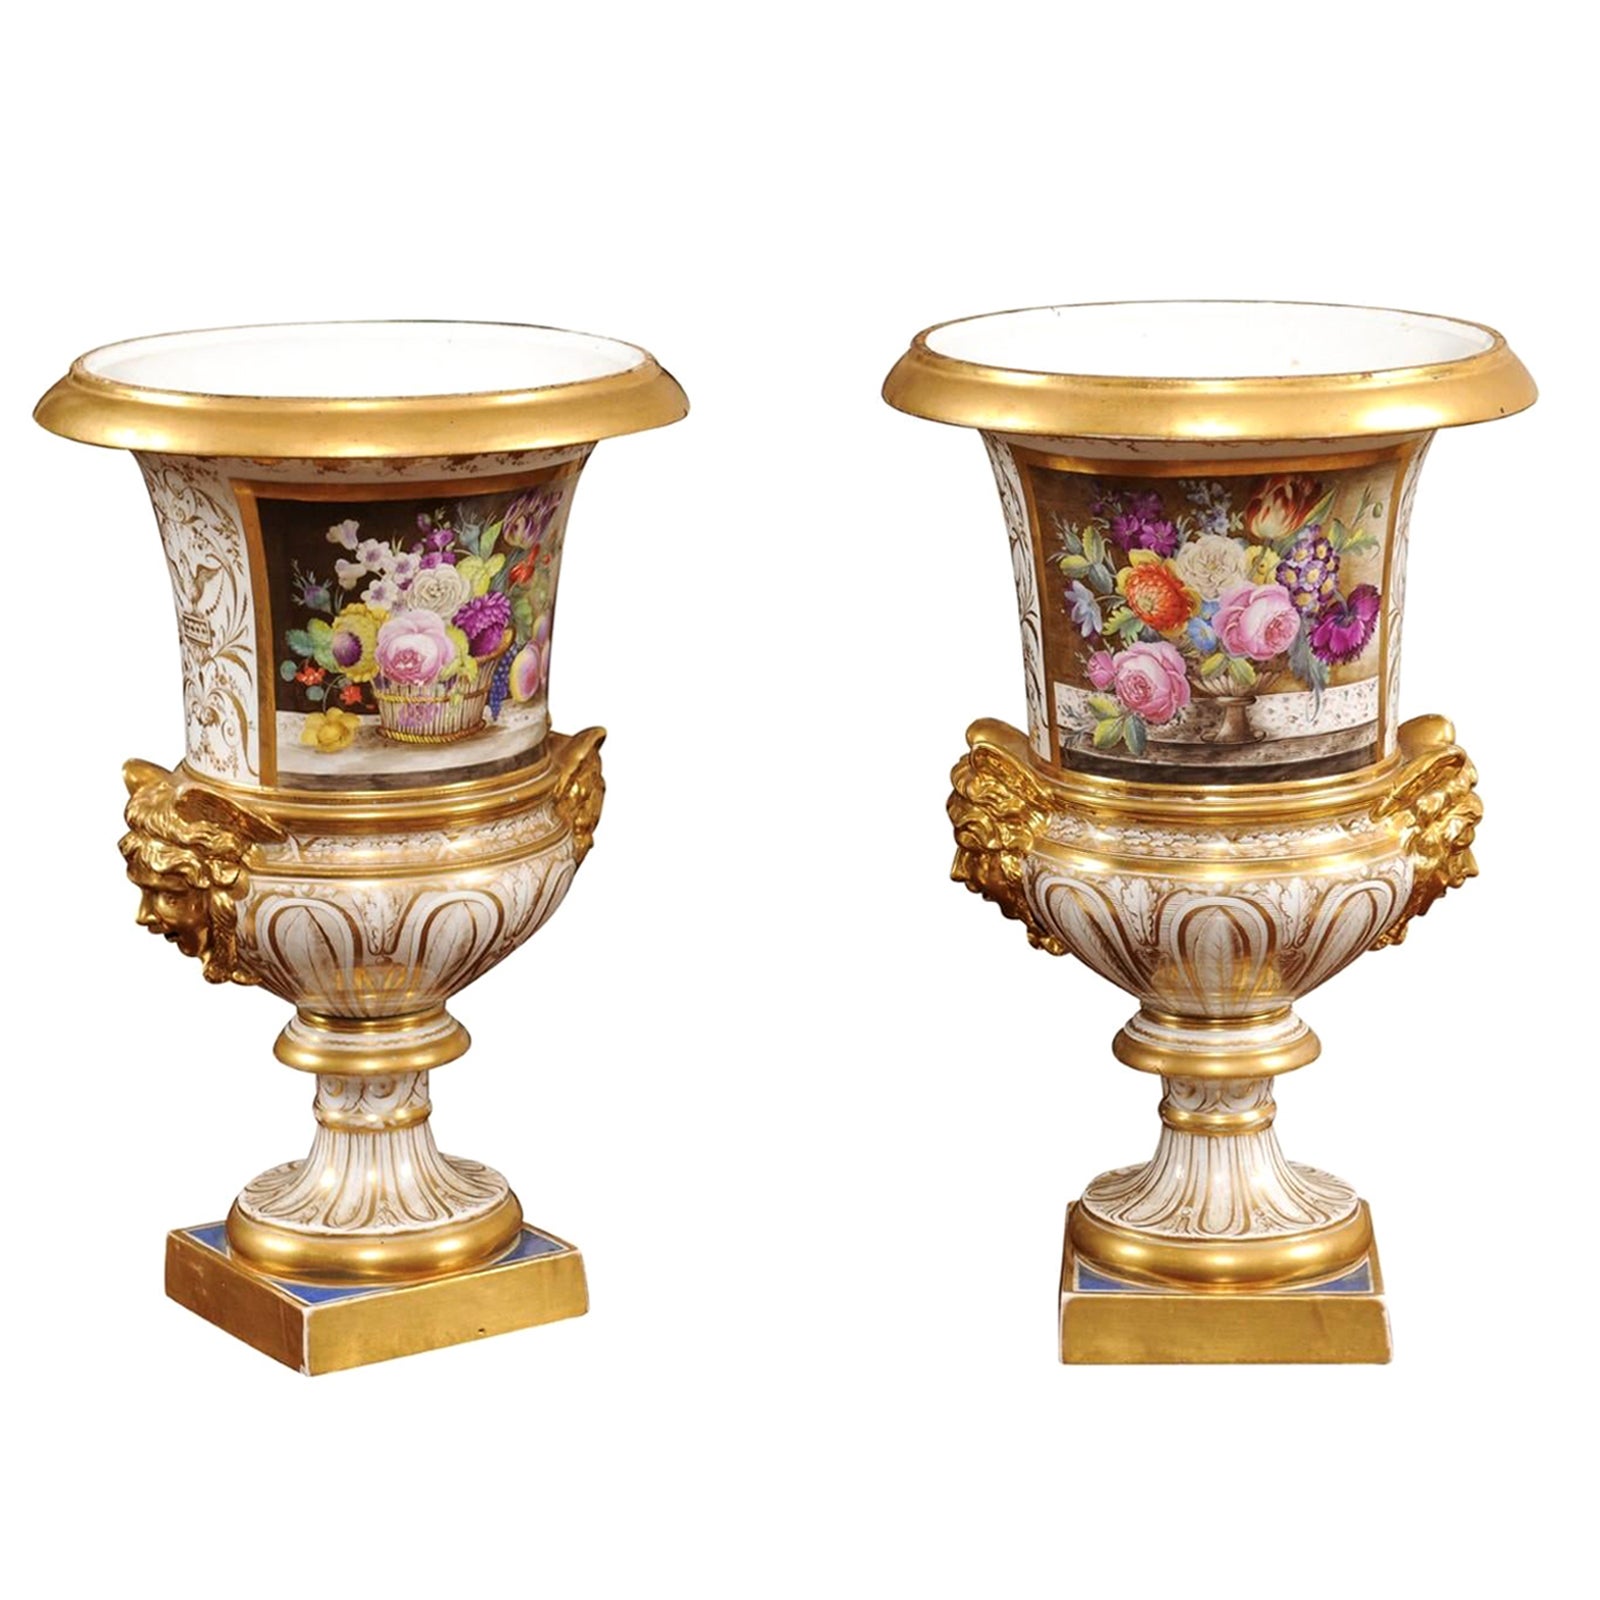 Paire d'urnes Derby anglaises du 19ème siècle avec fleurs